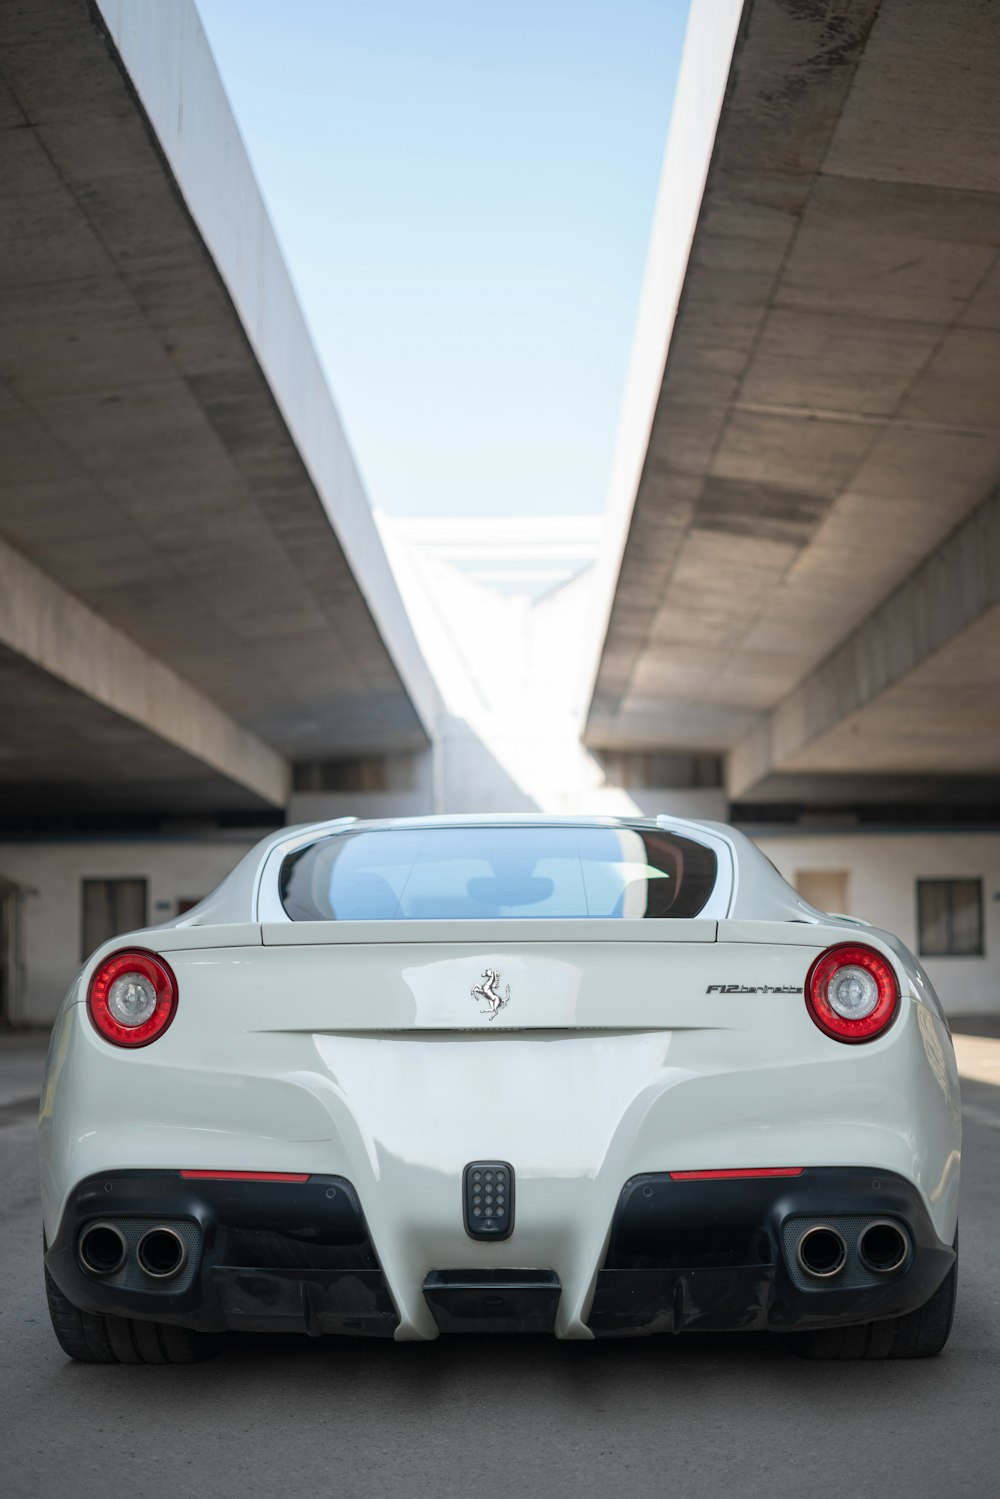 veículo Ferrari branco estacionado sob ponte